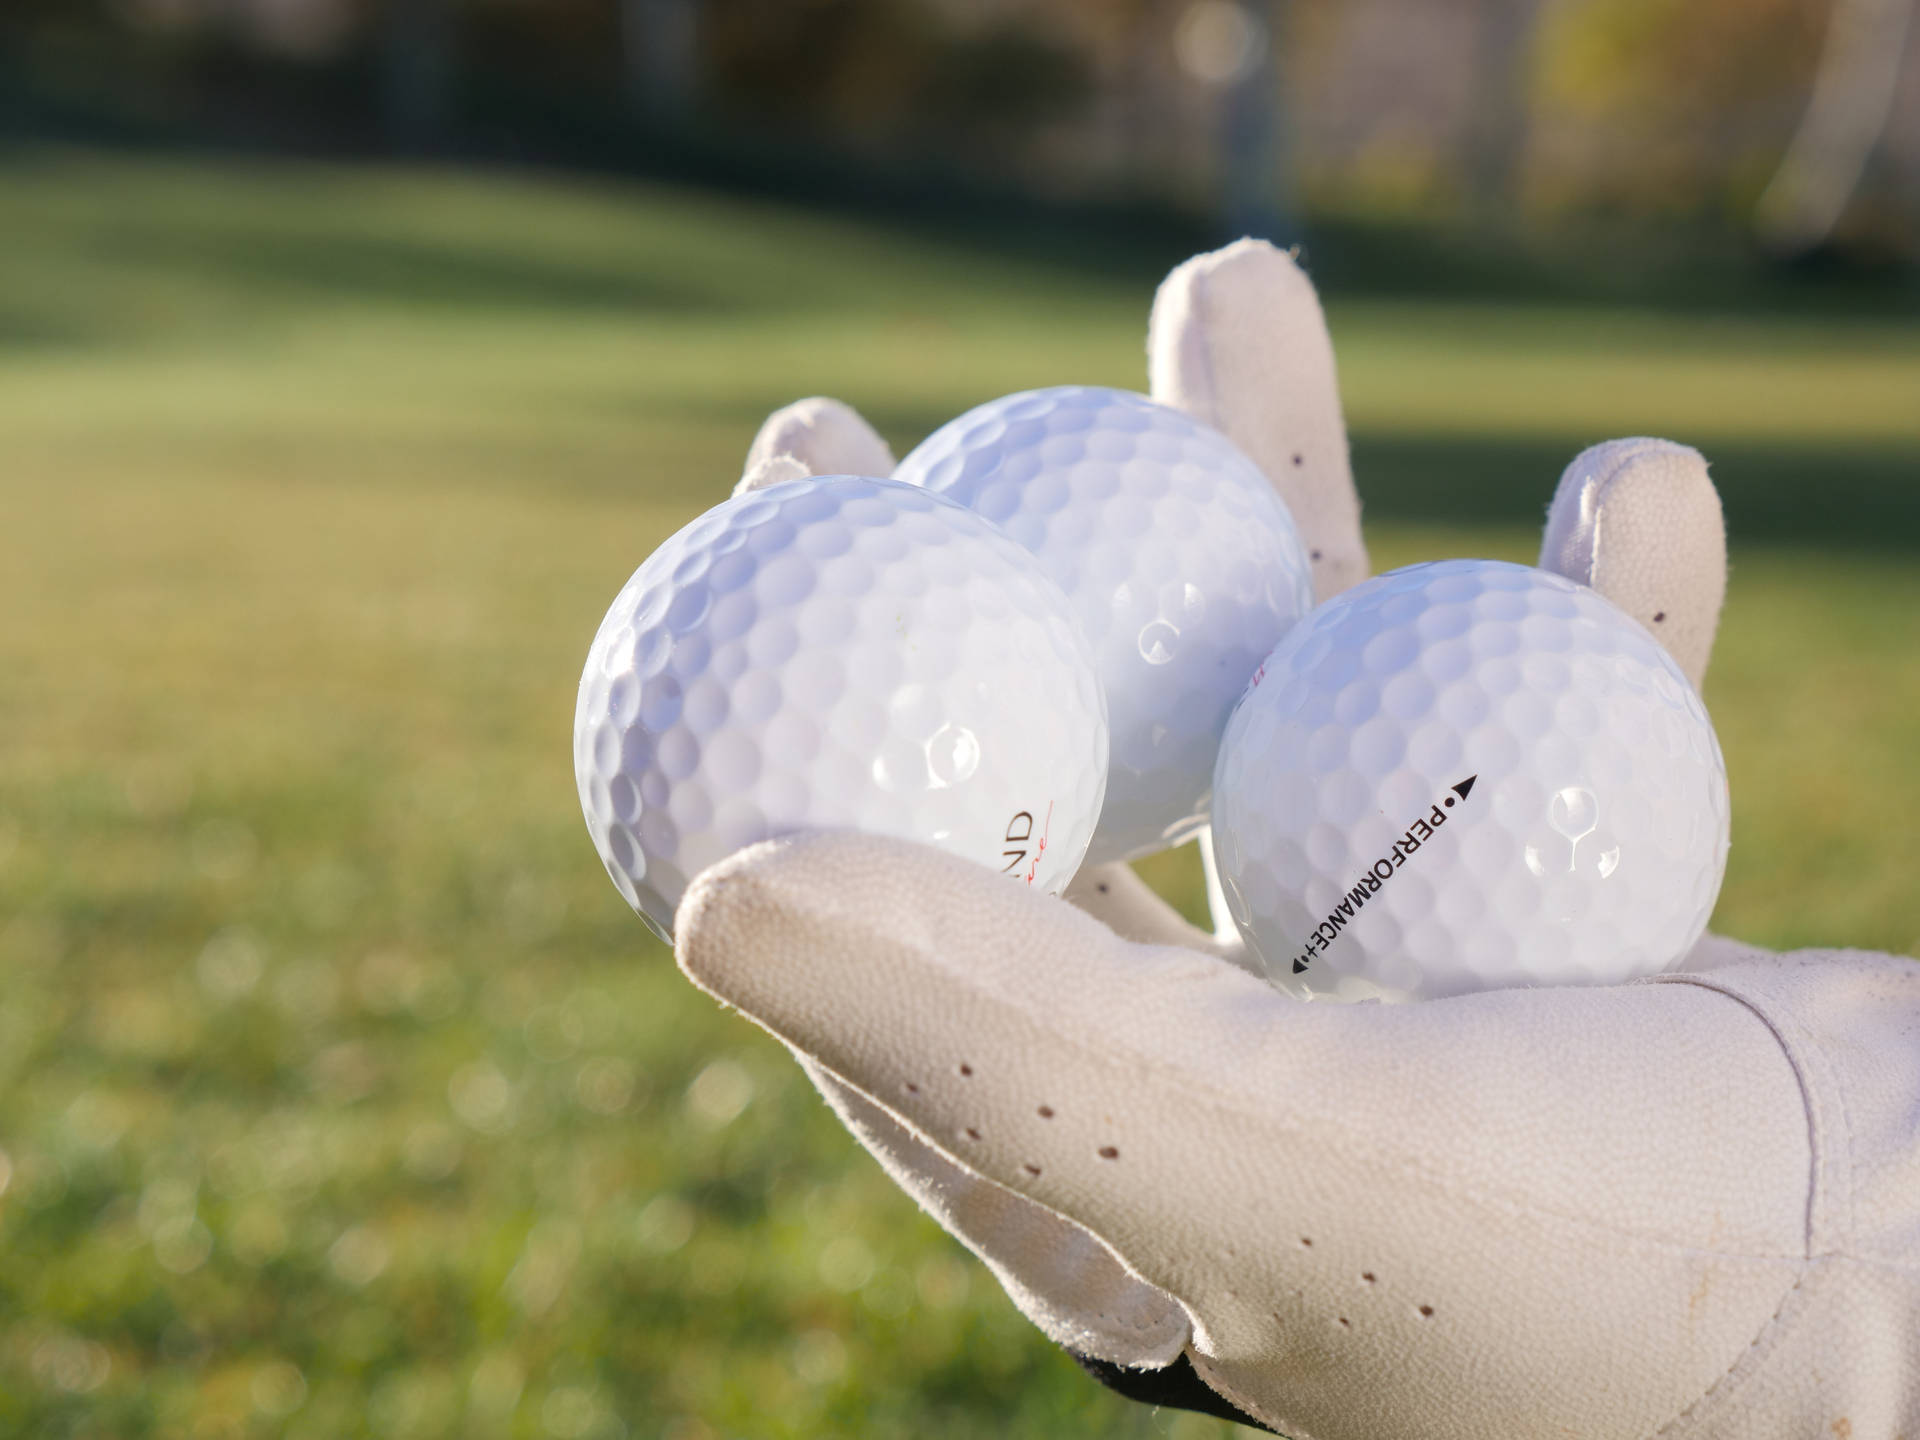 4k Three White Golf Balls On Hand Background